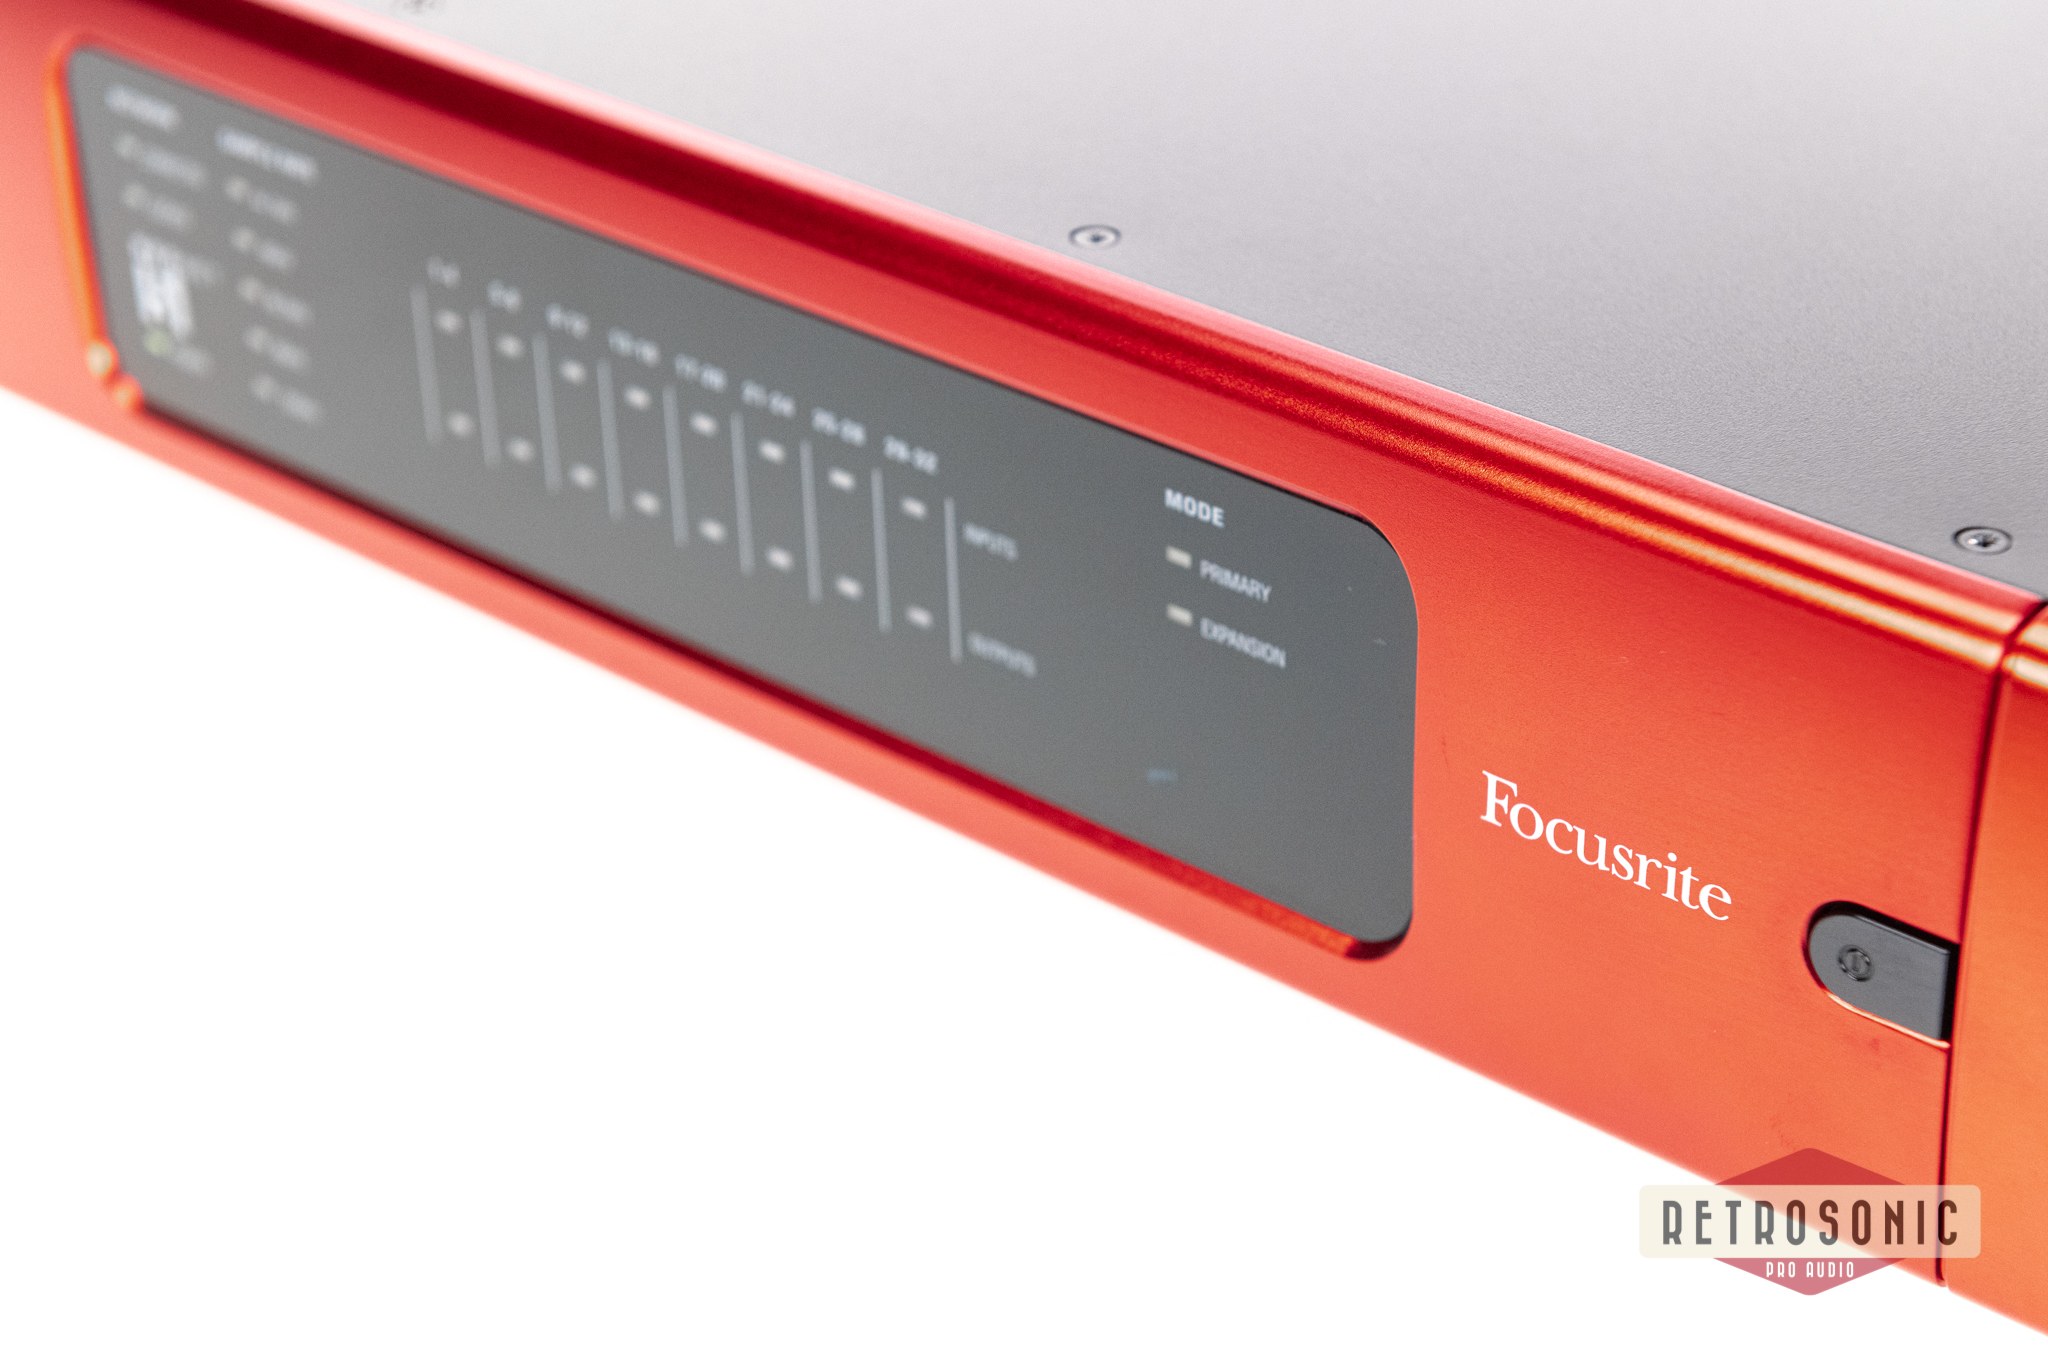 Focusrite RedNet 5 Pro Tools HD Bridge Dante Audio Interface #2